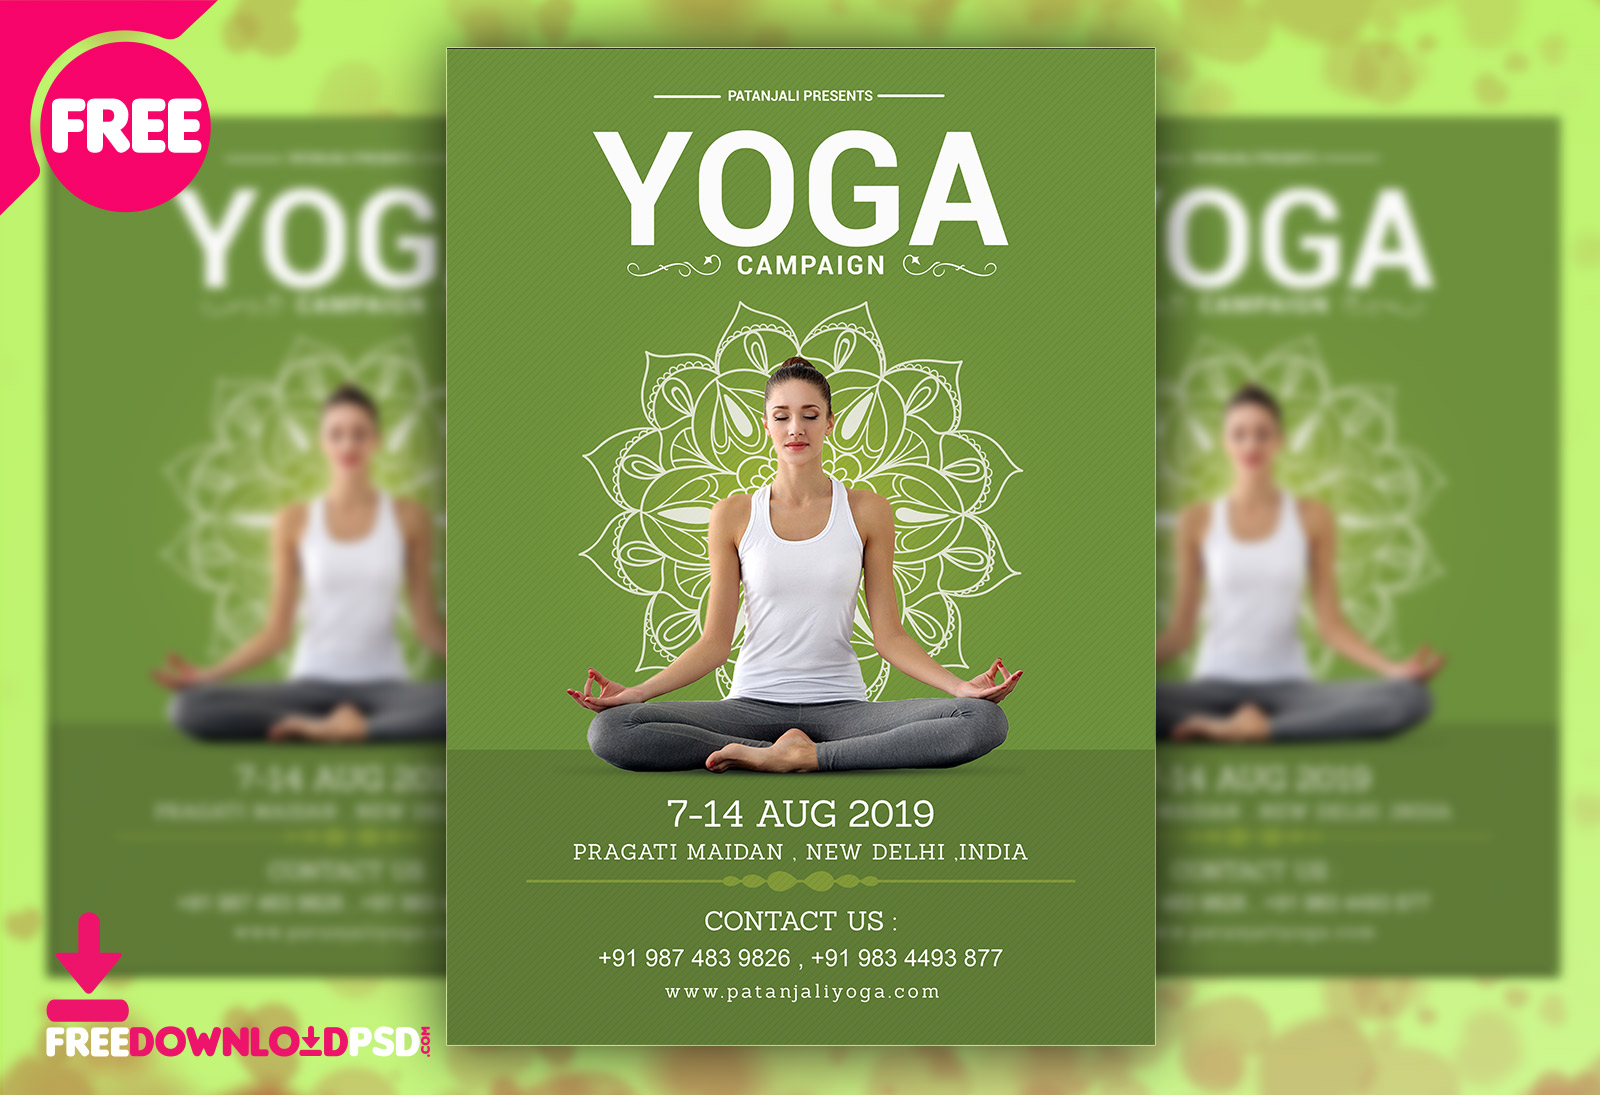 Free customizable and printable yoga flyer templates